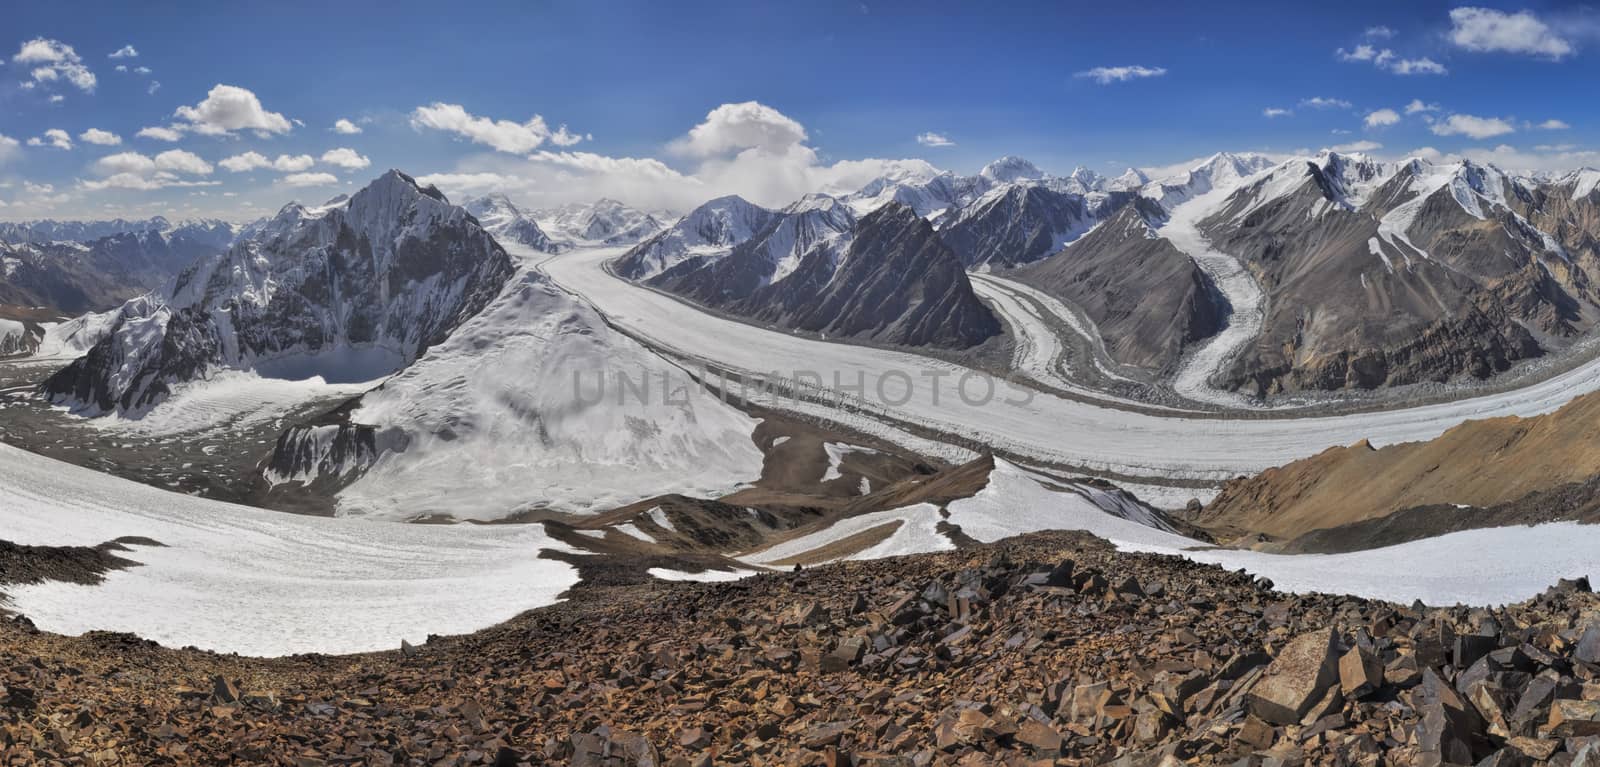 Pamir in Tajikistan by MichalKnitl